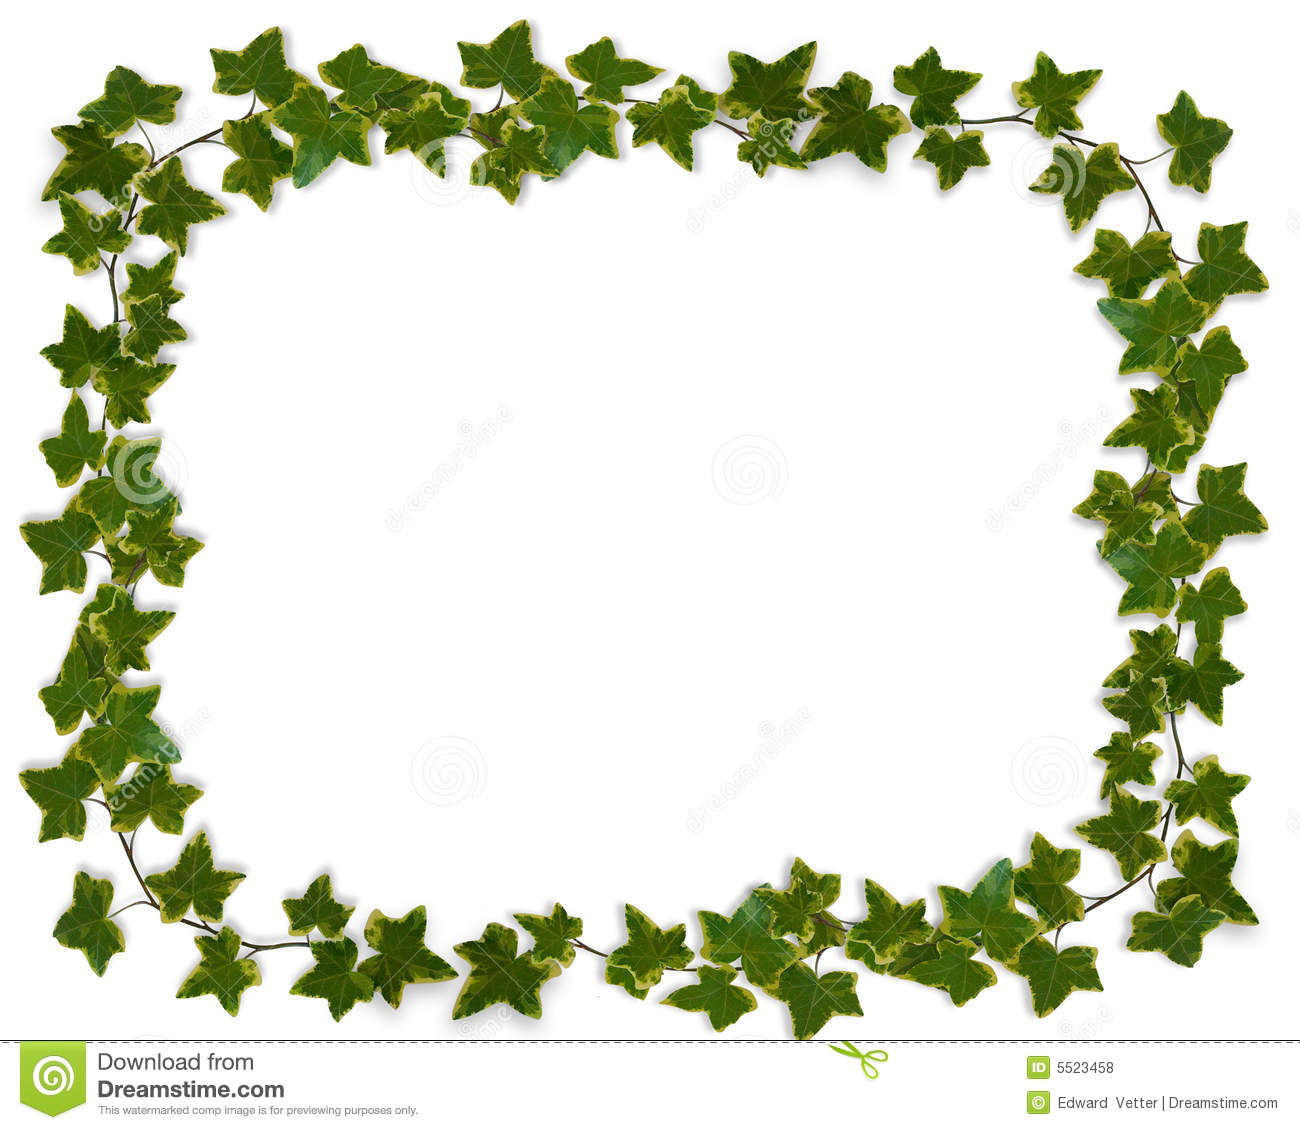 Ivy Leaves Image Composition For Background Border Frame Invitation